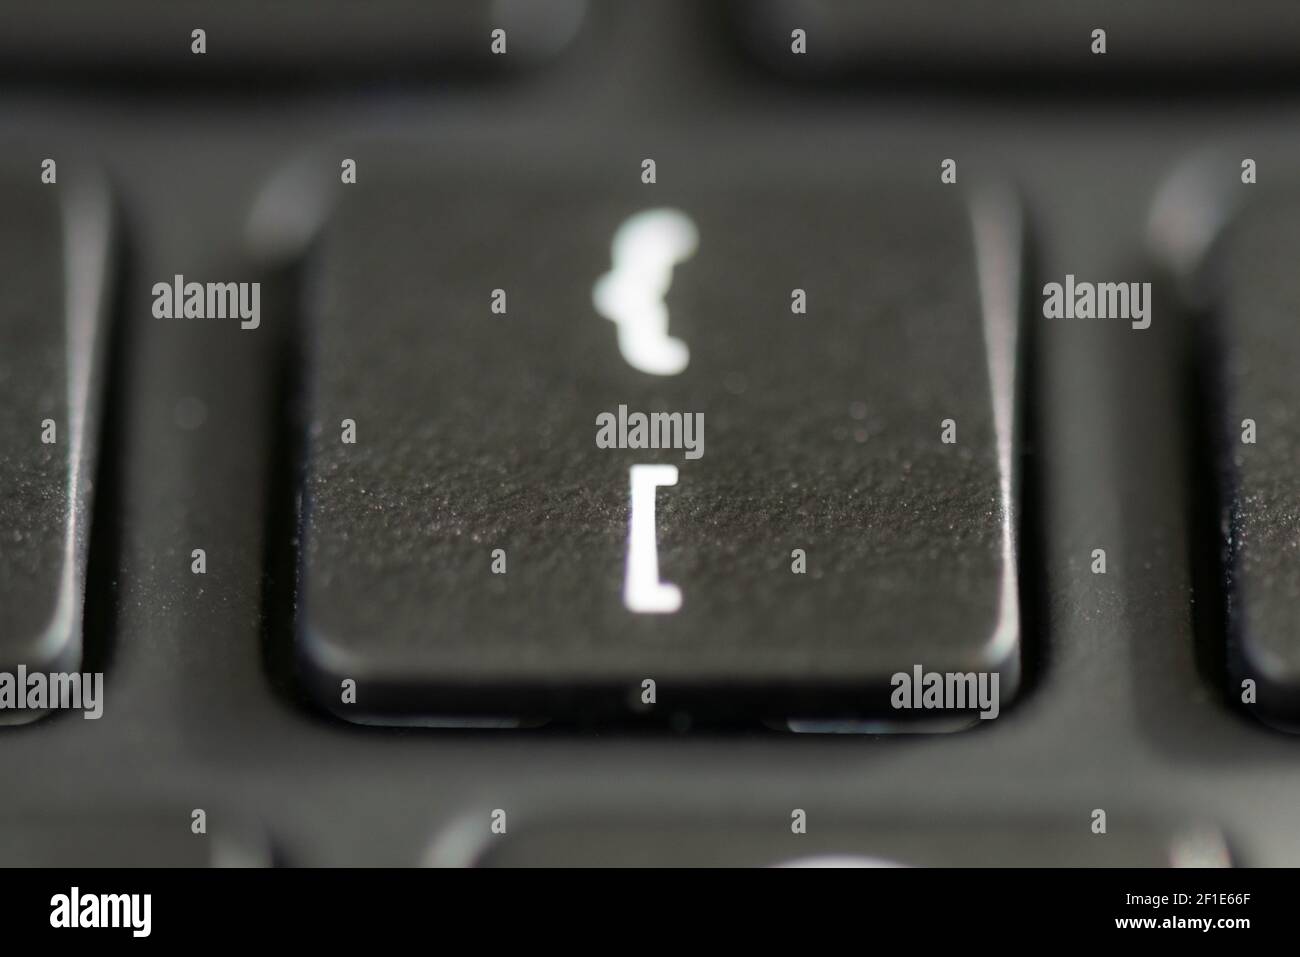 Eckige Klammer und geschweiften Klammerschlüssel auf einer Laptop-Tastatur  Stockfotografie - Alamy